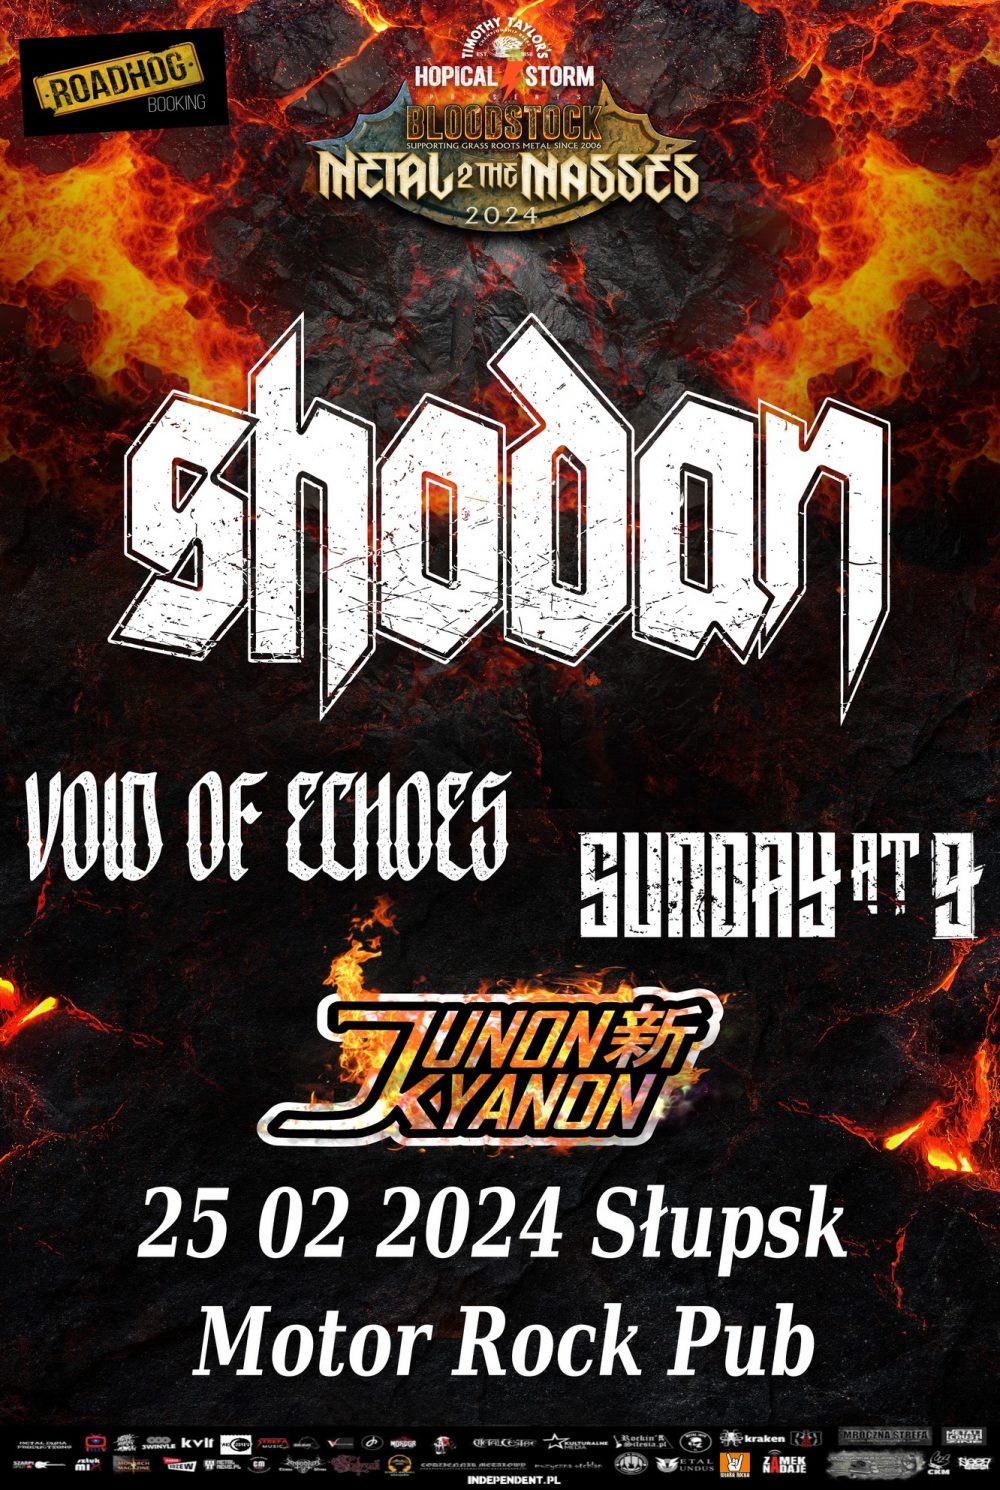 Bloodstock Metal 2 The Masses Poland 2024 - SHODAN + SUNDAY AT 9 + JUNON KYANON + VOID OF ECHOES